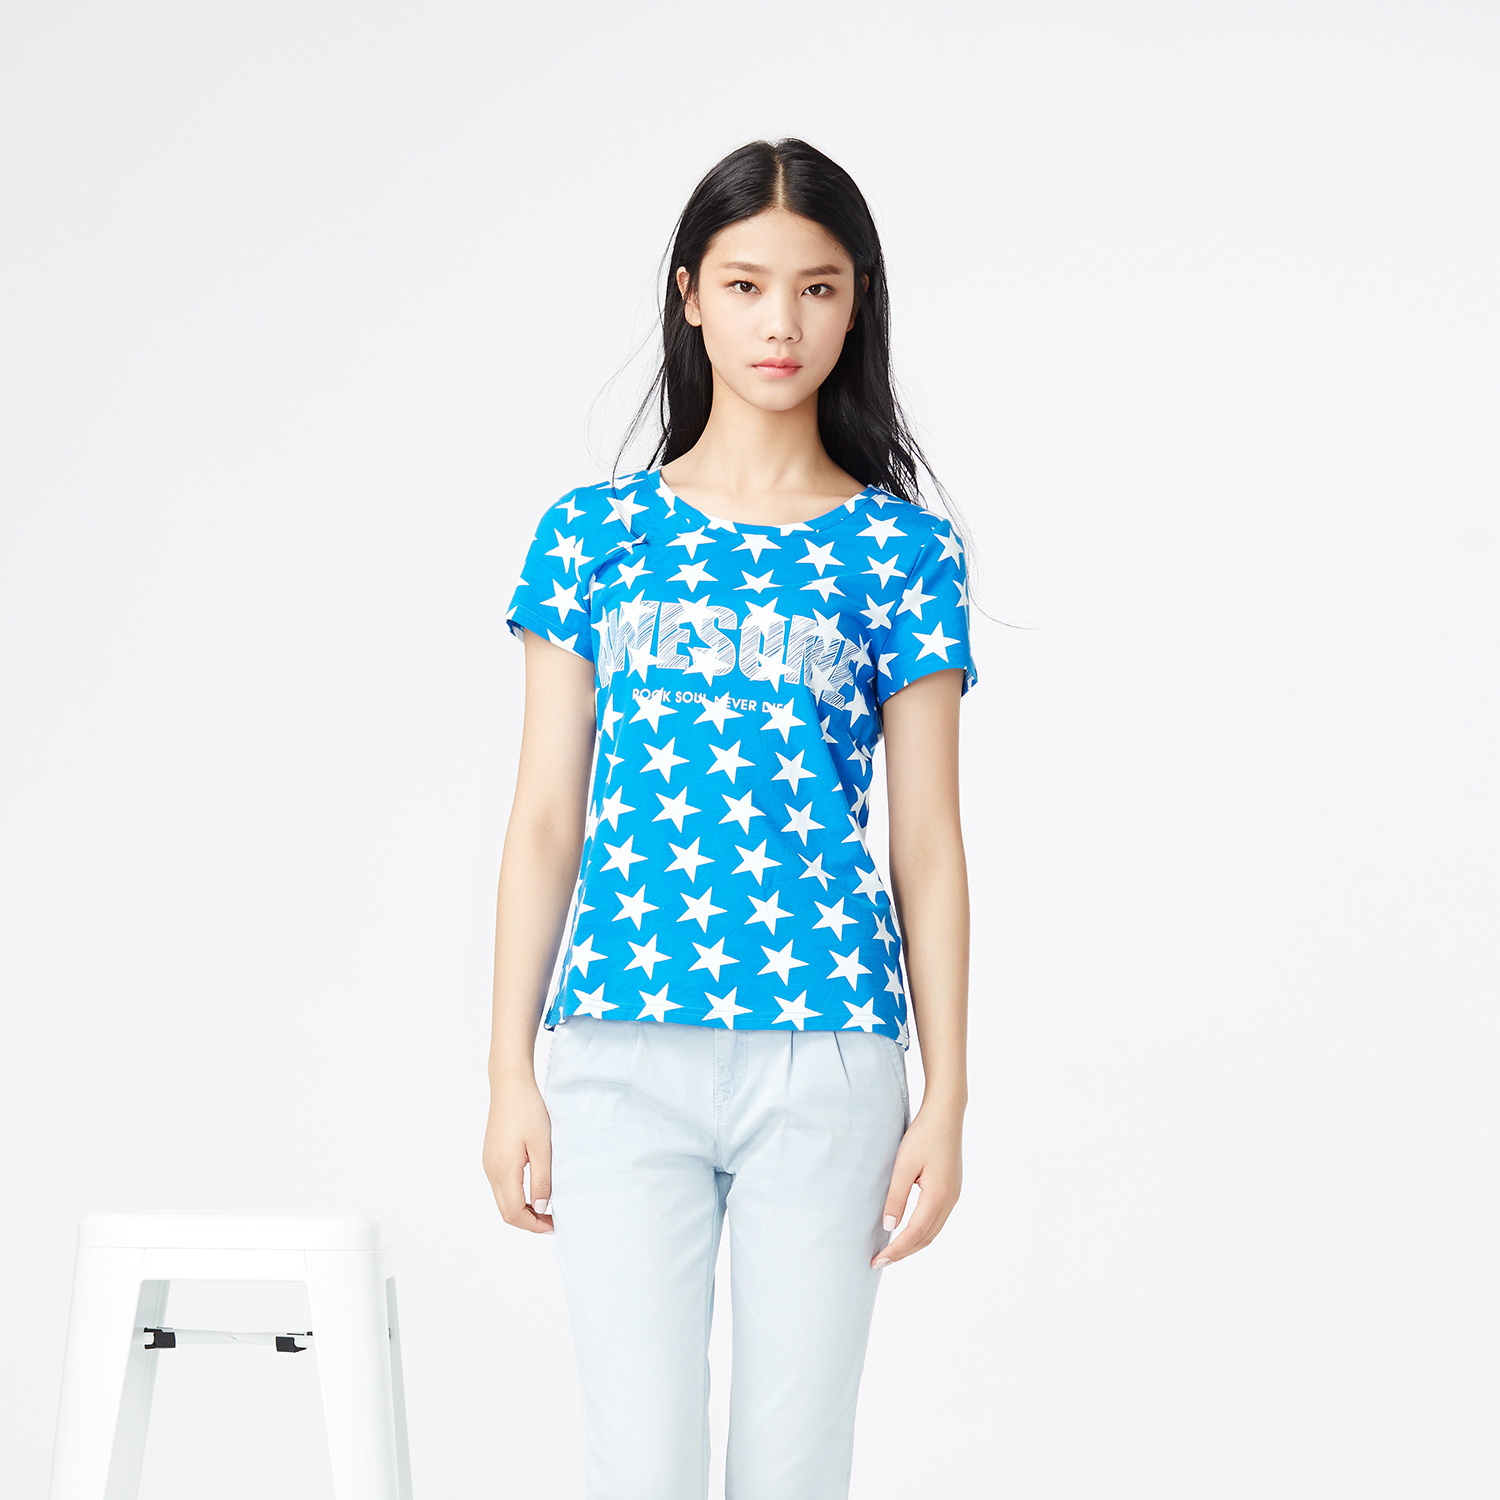 2015夏装新款美特斯邦威女短袖t恤206599组组组白色组蓝色组印花